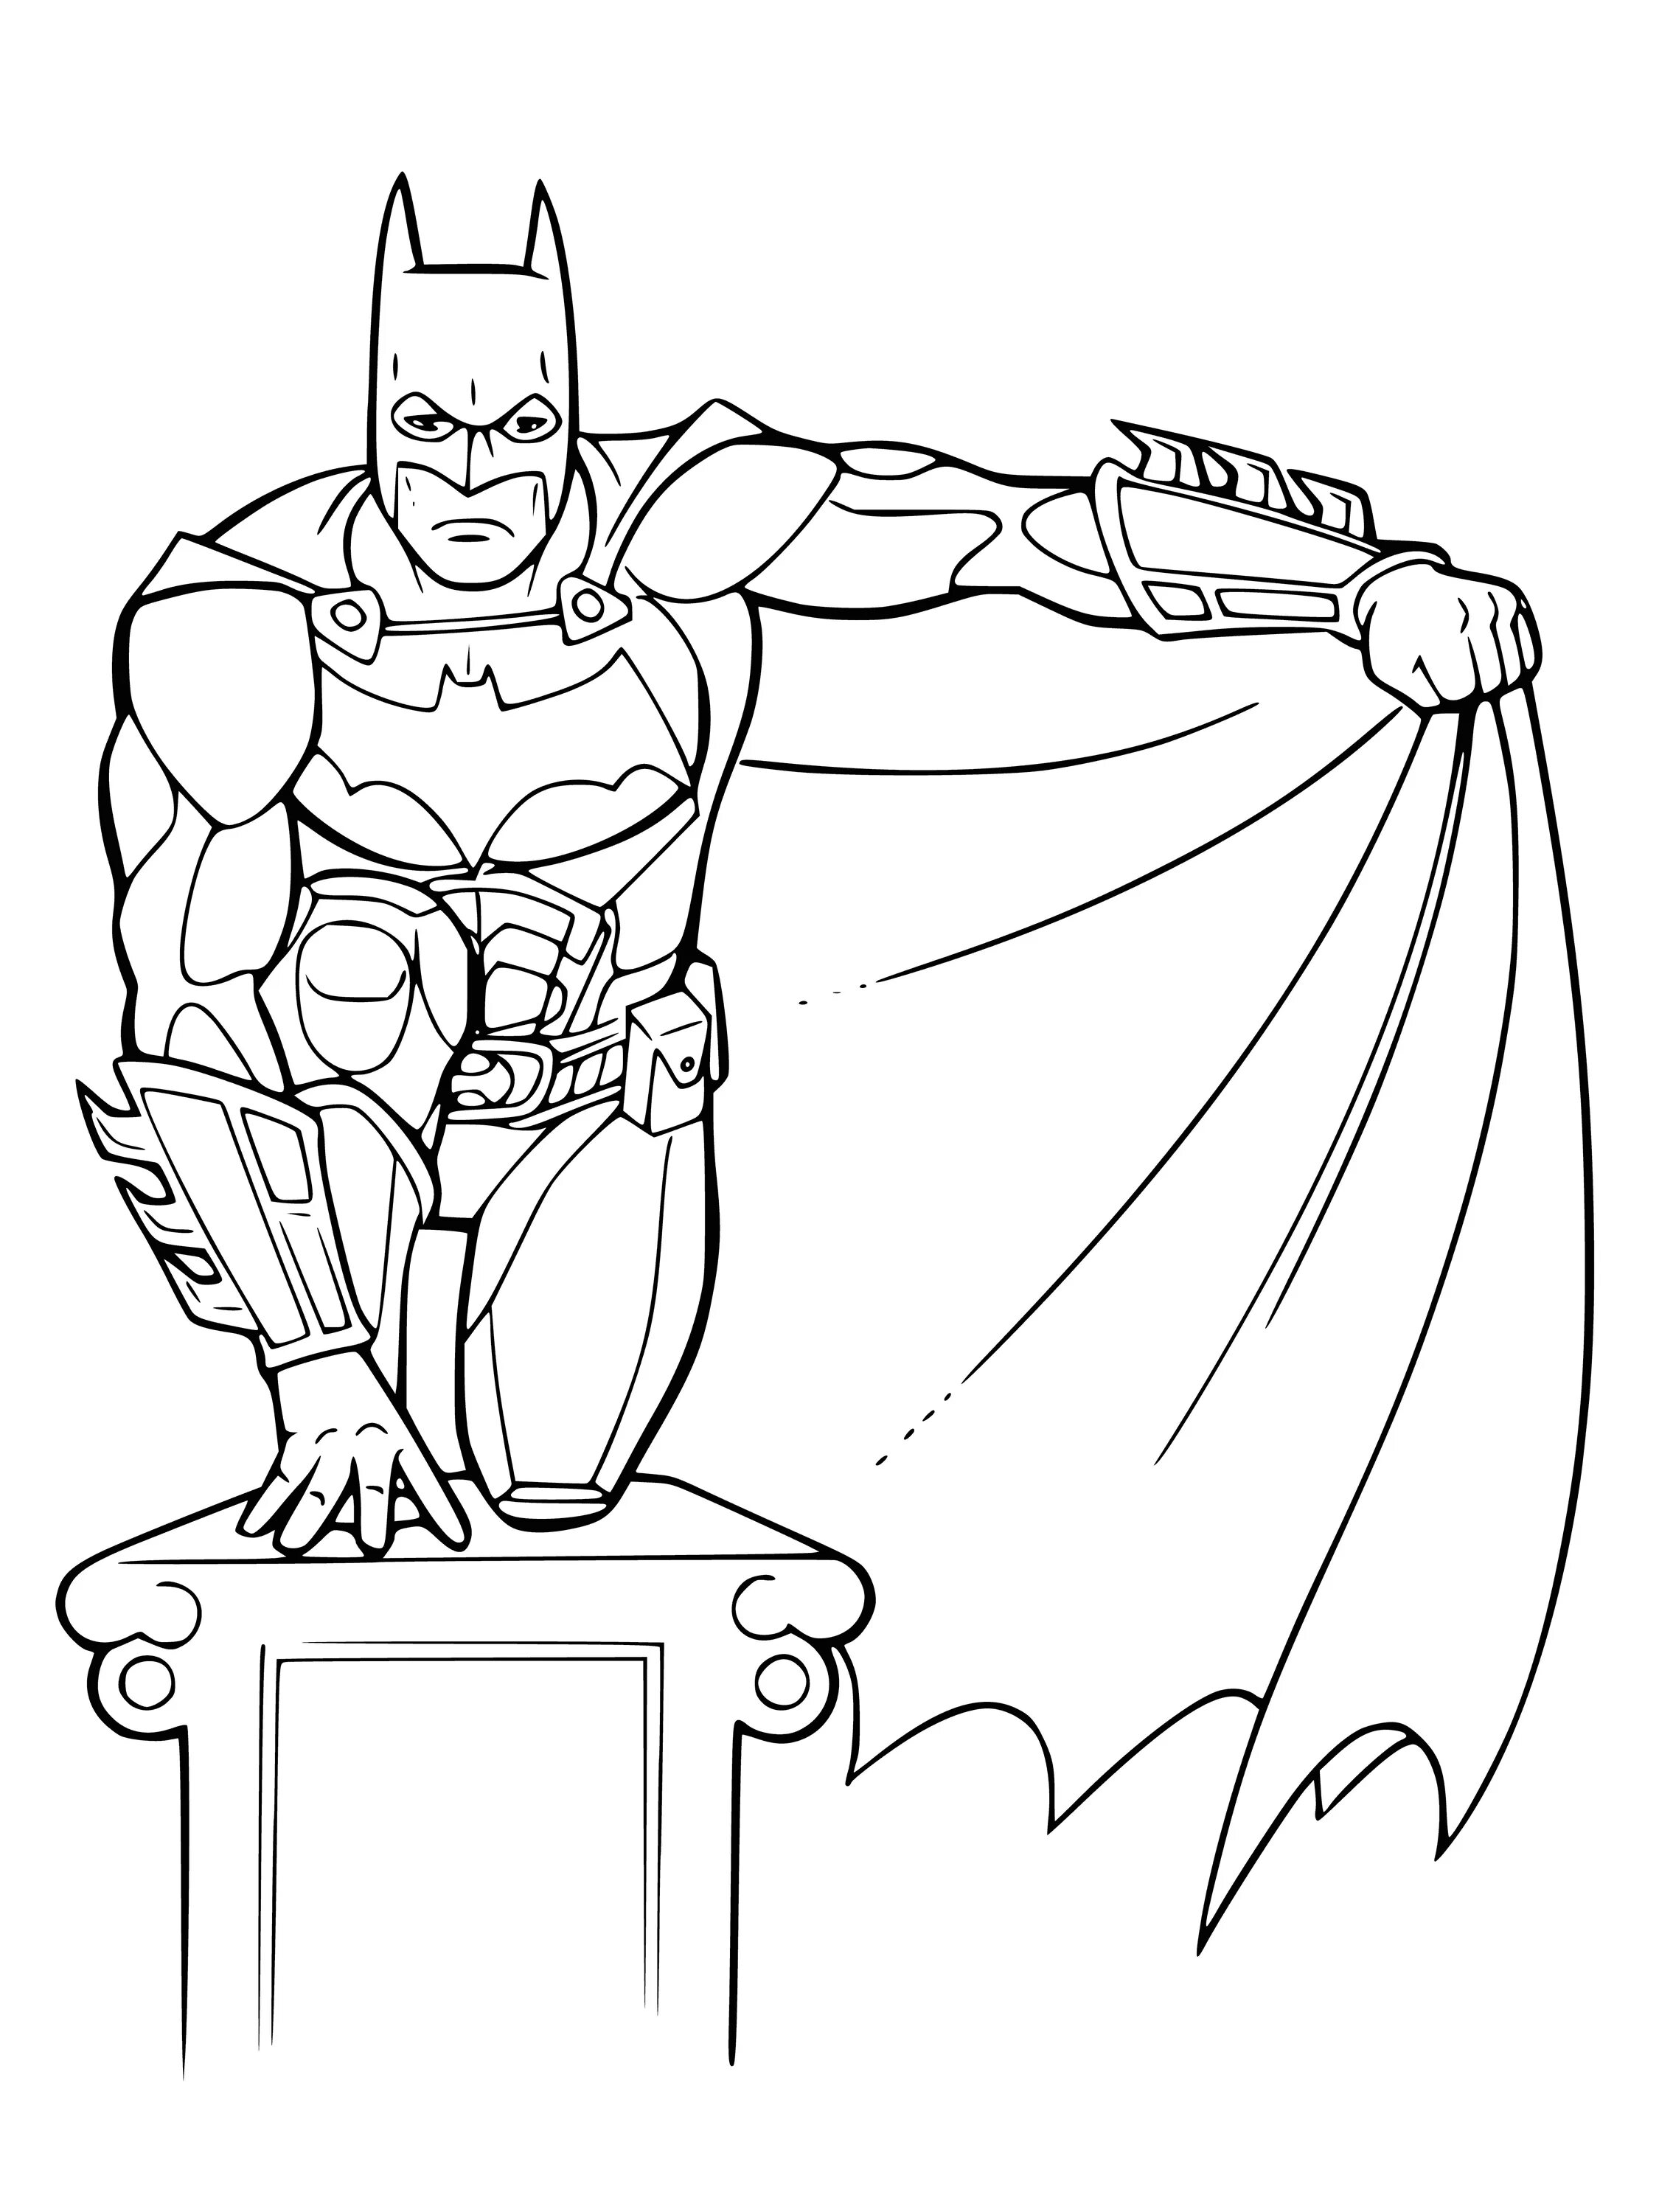 Рисунки для мальчиков 8. Бэтмен раскраска. Раскраска Супергерои Бэтмен. Разукрашки для детей Бэтмен. Рисунок Бэтмена для раскрашивания.